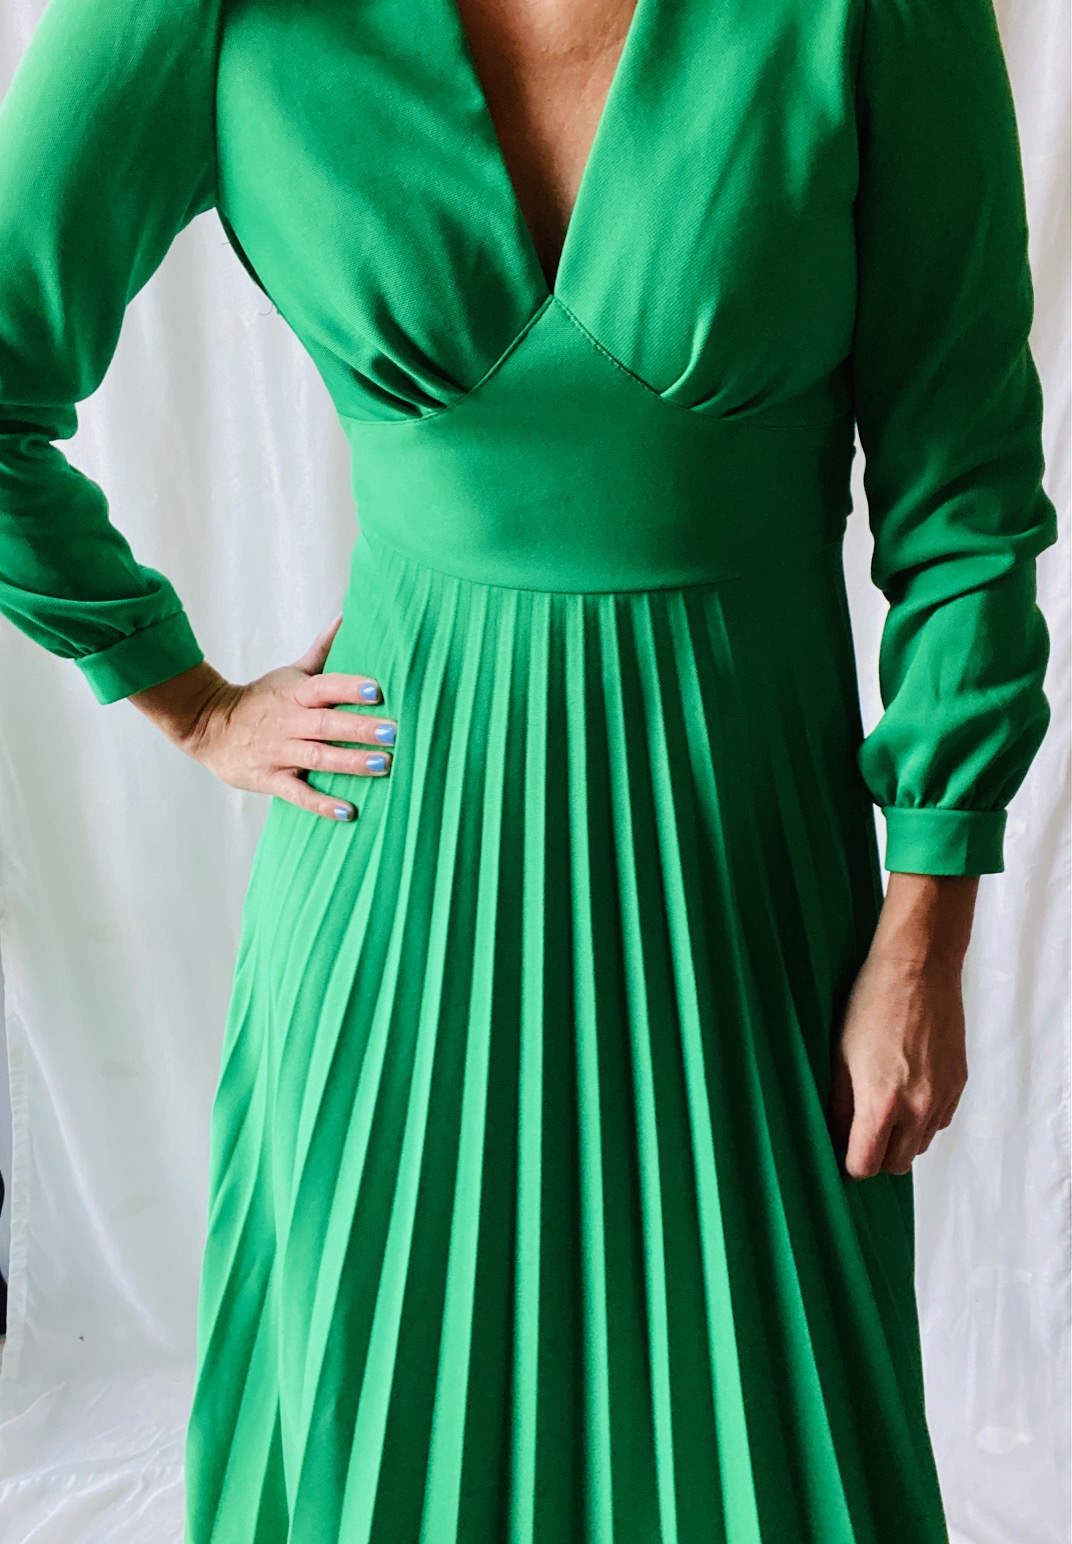 Vintage klänning i knalligt grönt